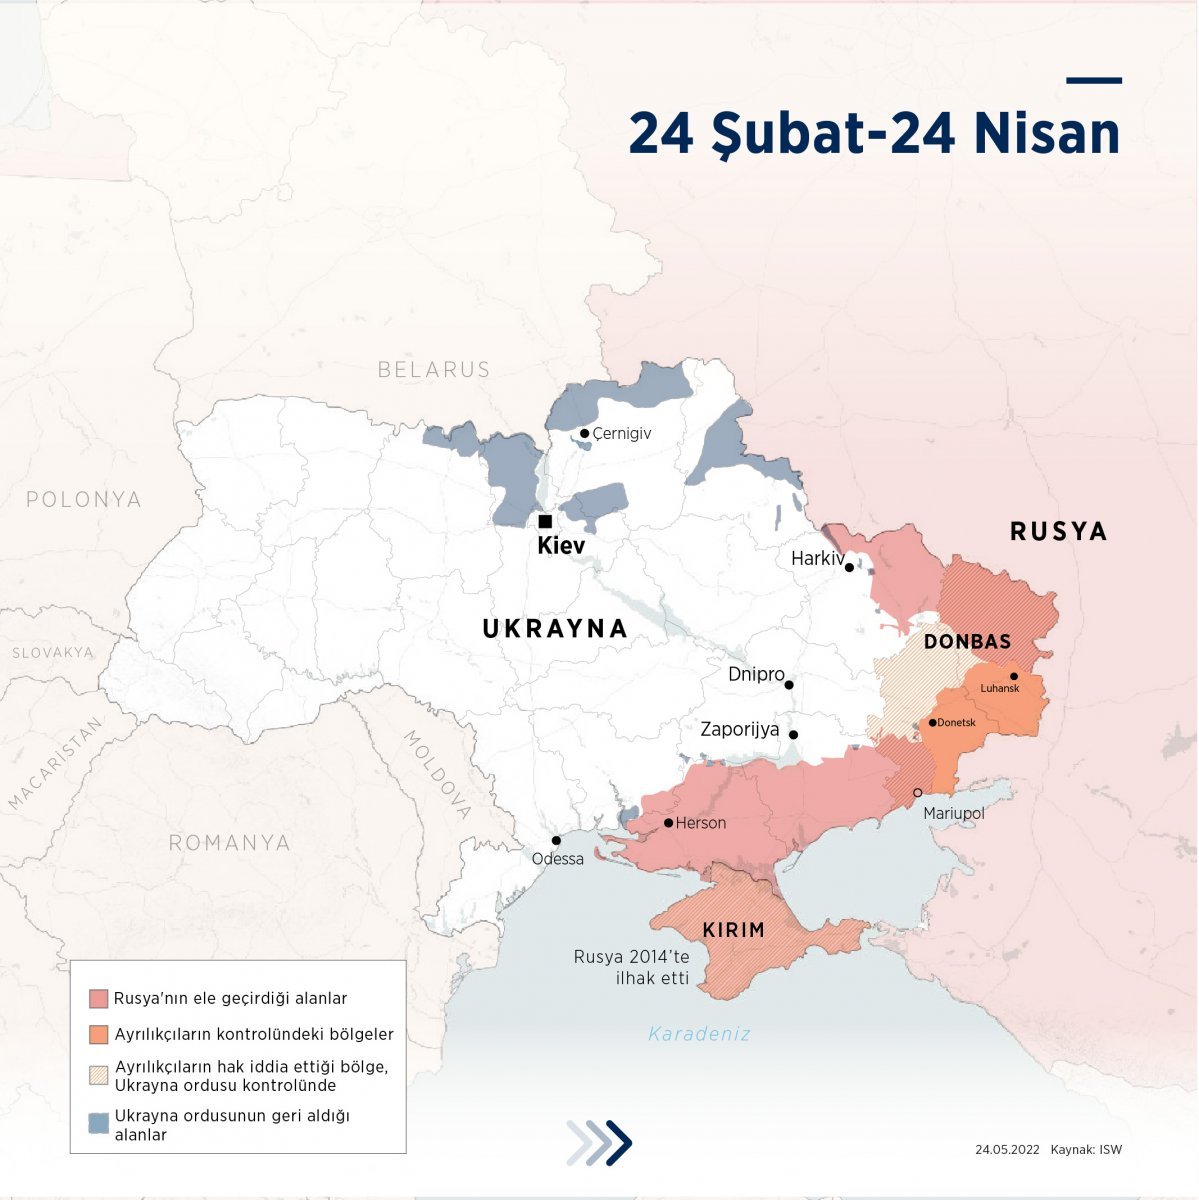 Russia-Ukraine war in its third month #2